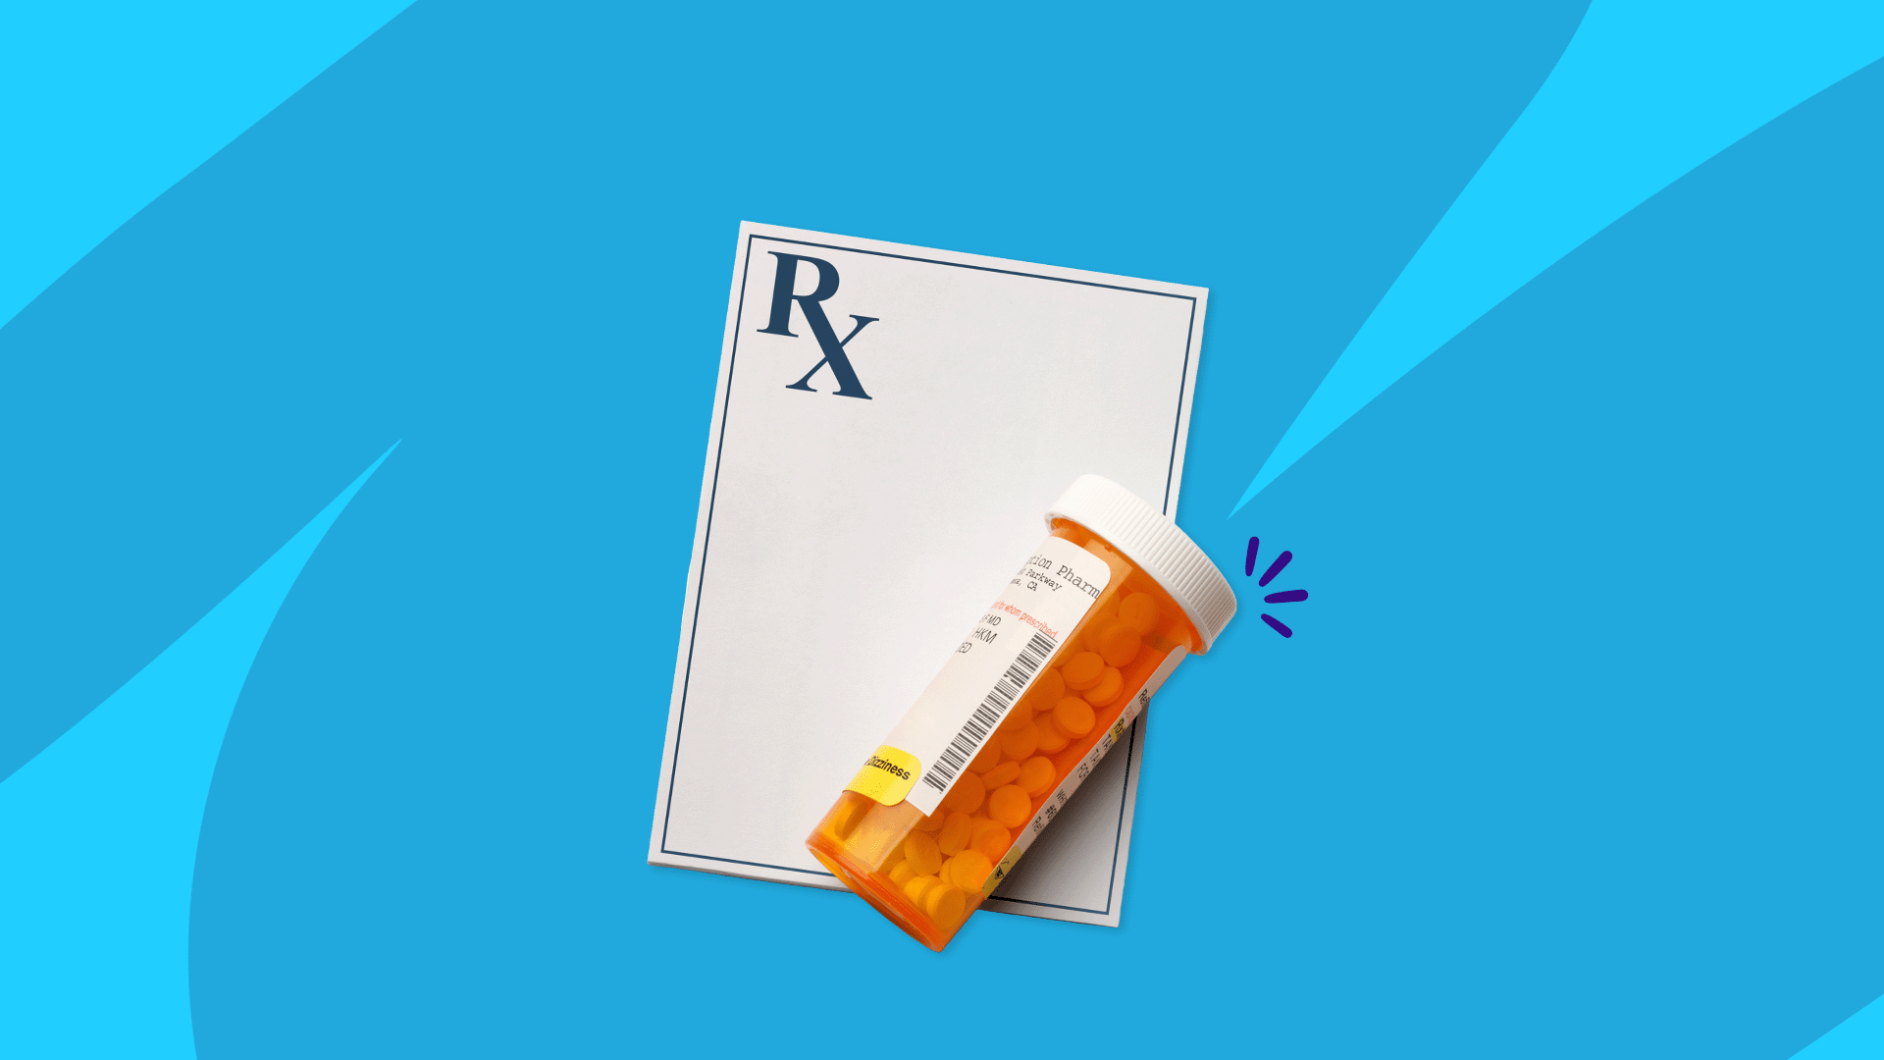 Rx prescription pad & Rx pill bottle: Generic Cialis